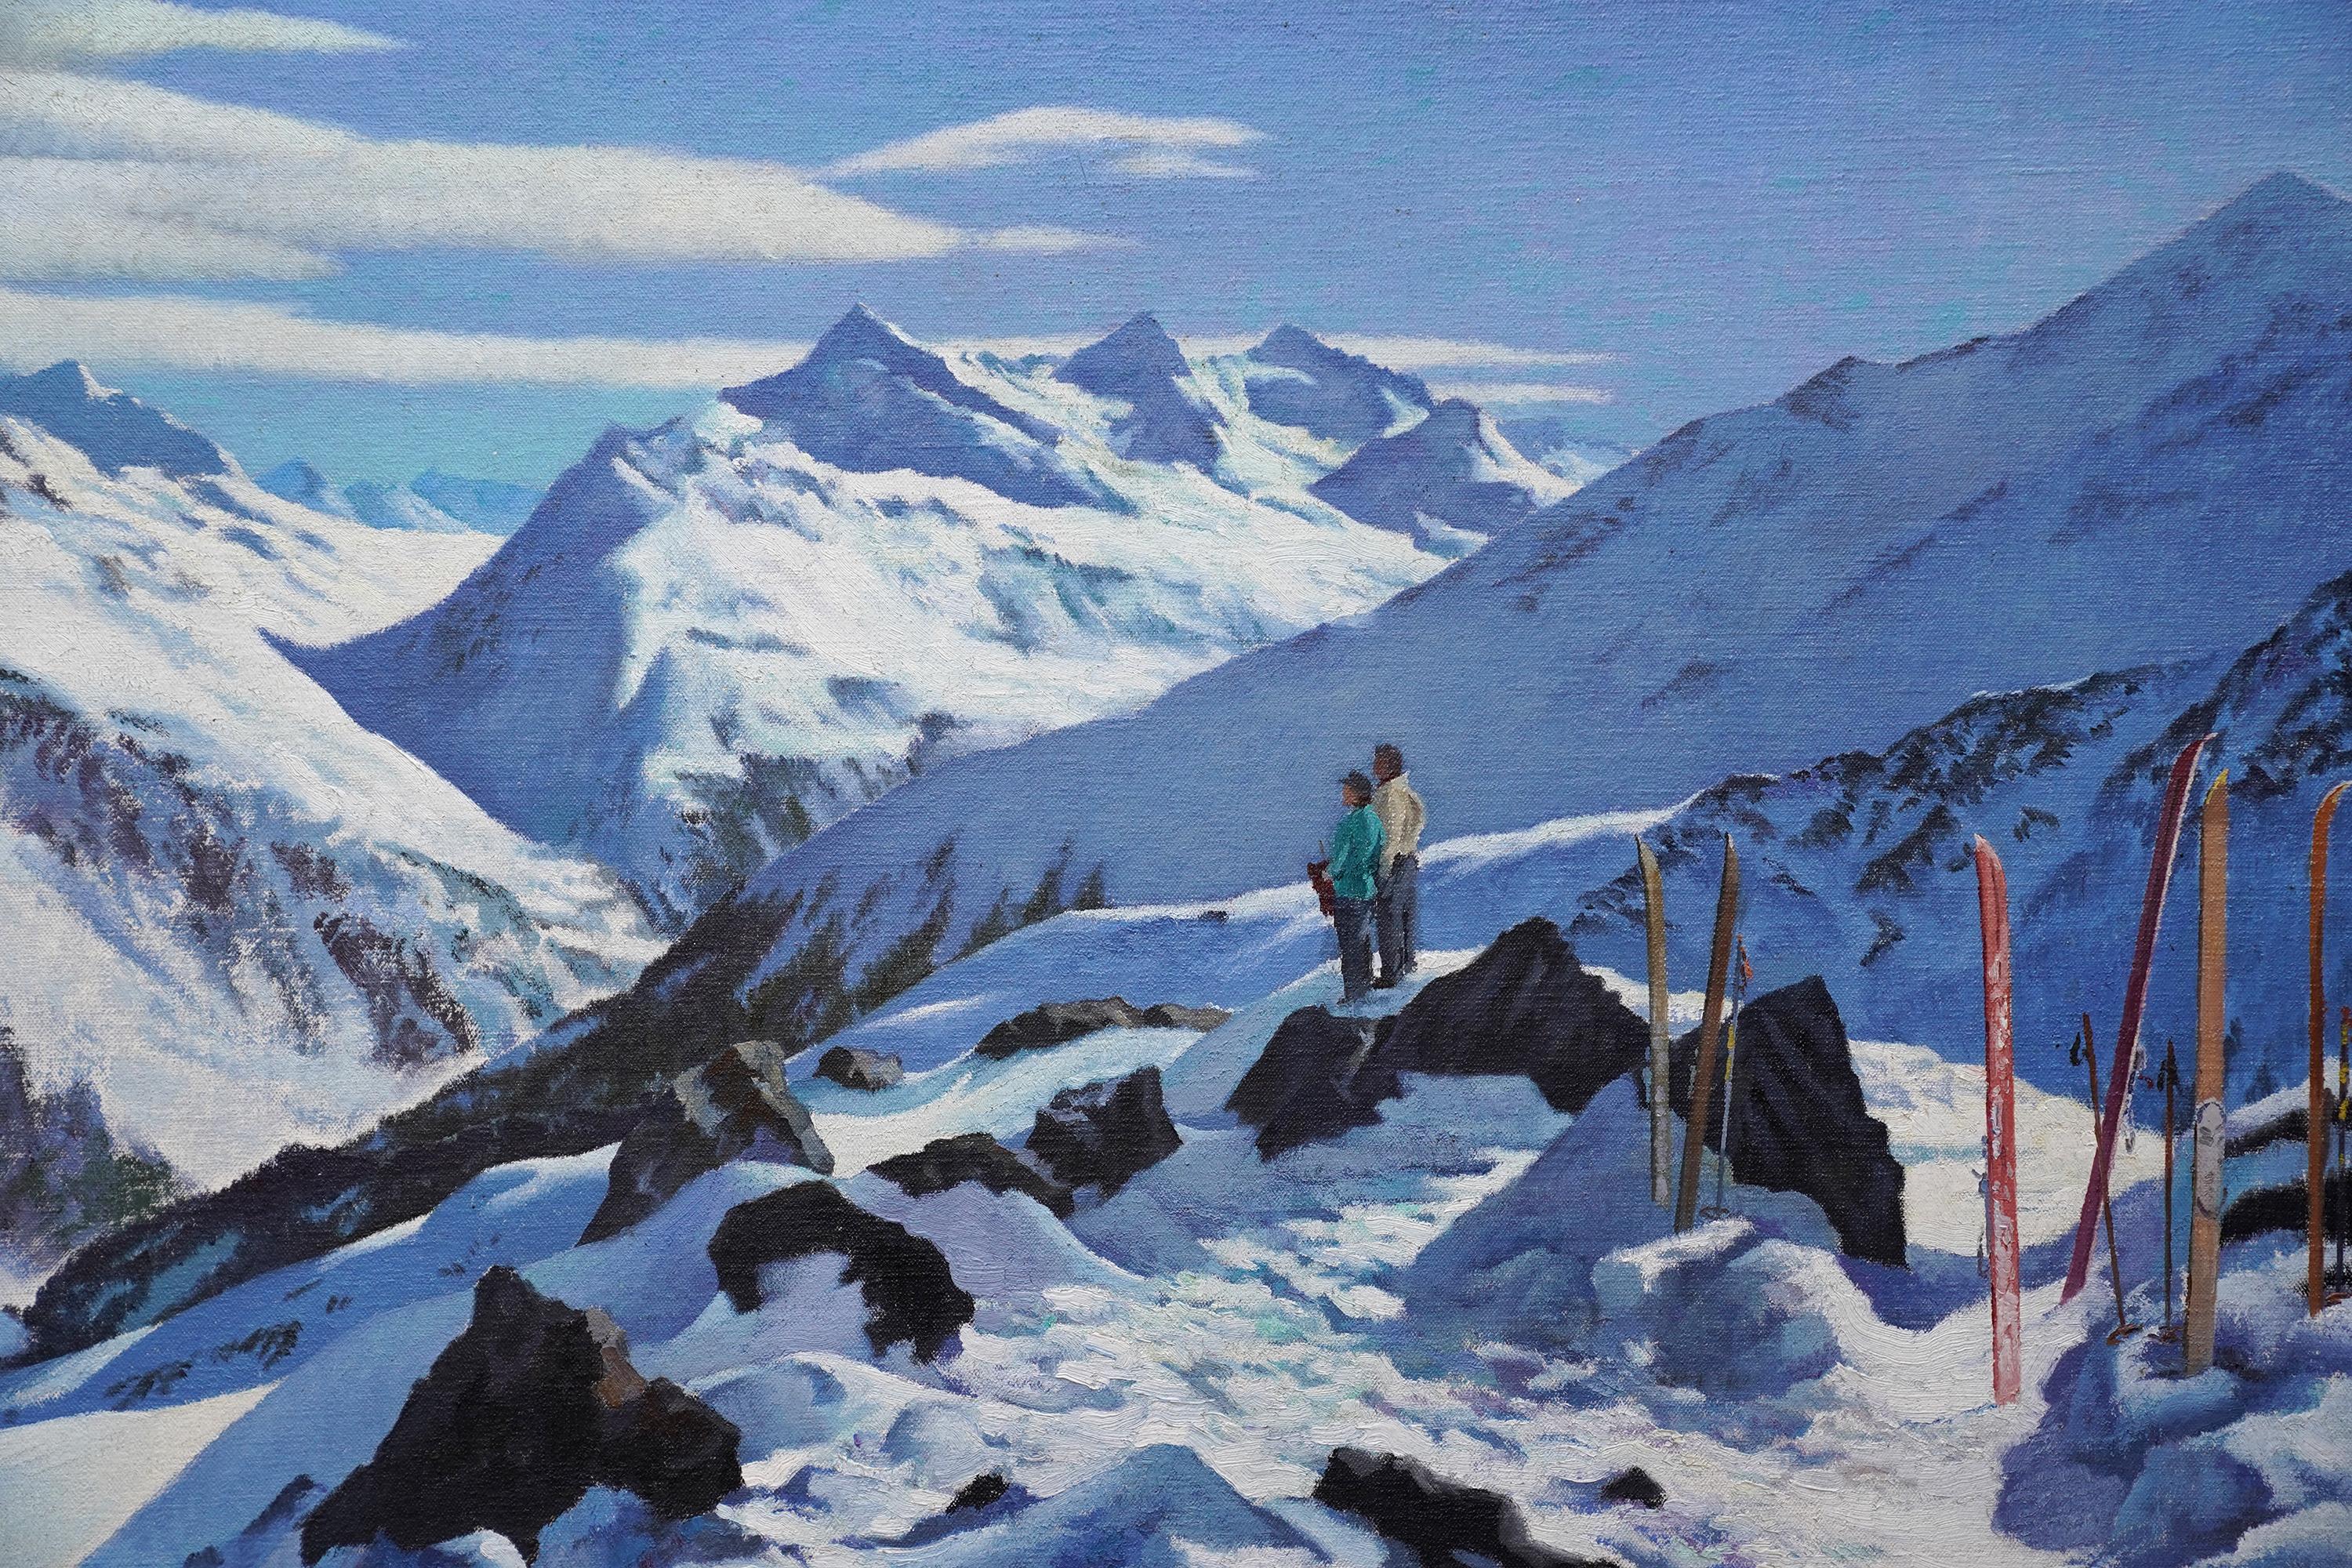 Dieses dramatische Ölgemälde einer verschneiten Berglandschaft stammt vom britischen Künstler Francis Wynne Thomas. Es wurde um 1945 gemalt, als Thomas in Deutschland war und malte. Die Komposition besteht aus einer Reihe von schneebedeckten Bergen,